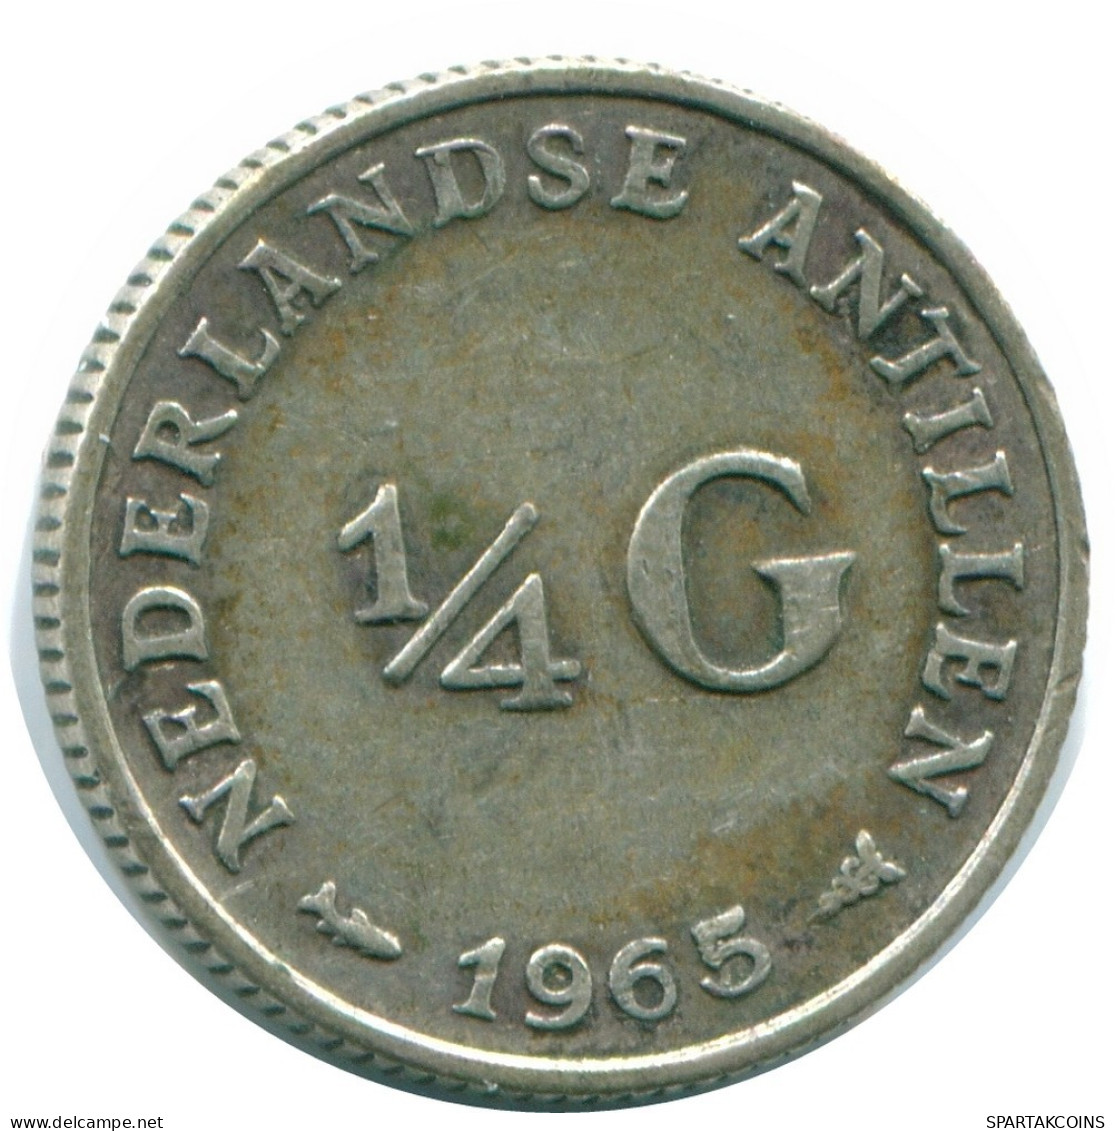 1/4 GULDEN 1965 NIEDERLÄNDISCHE ANTILLEN SILBER Koloniale Münze #NL11339.4.D.A - Antilles Néerlandaises